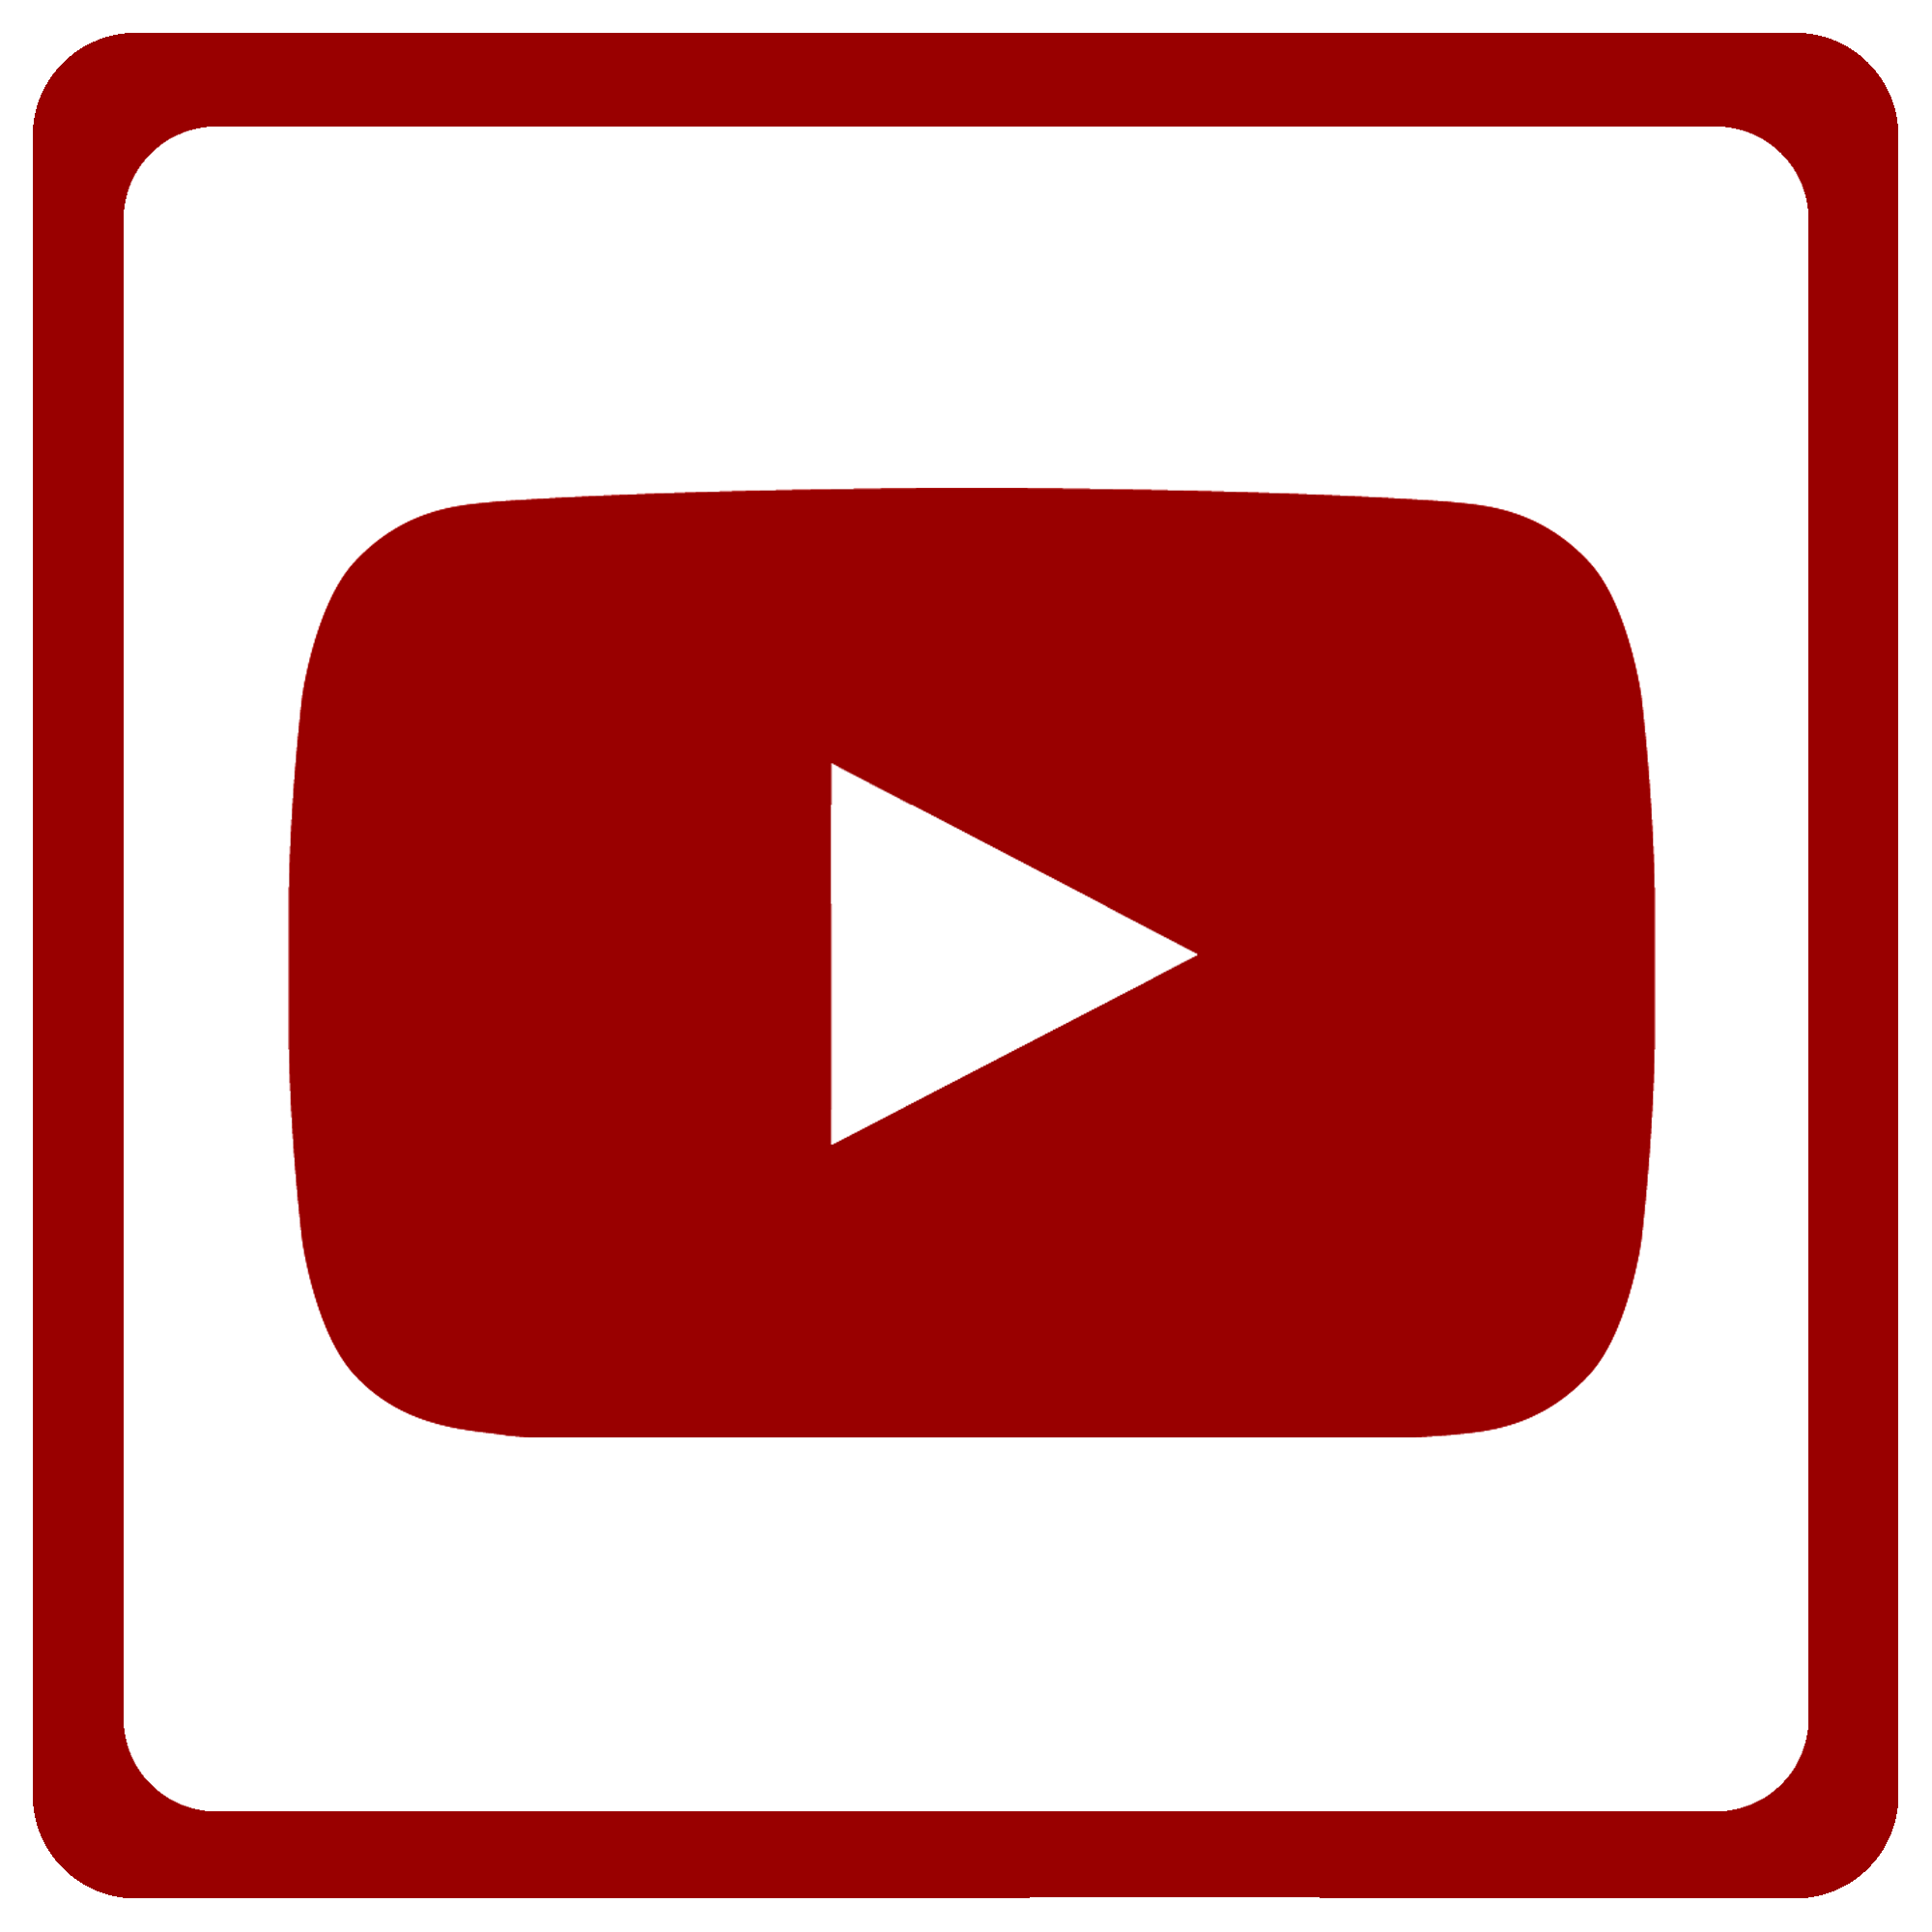 Logo Youtube Png Transparente - vrogue.co